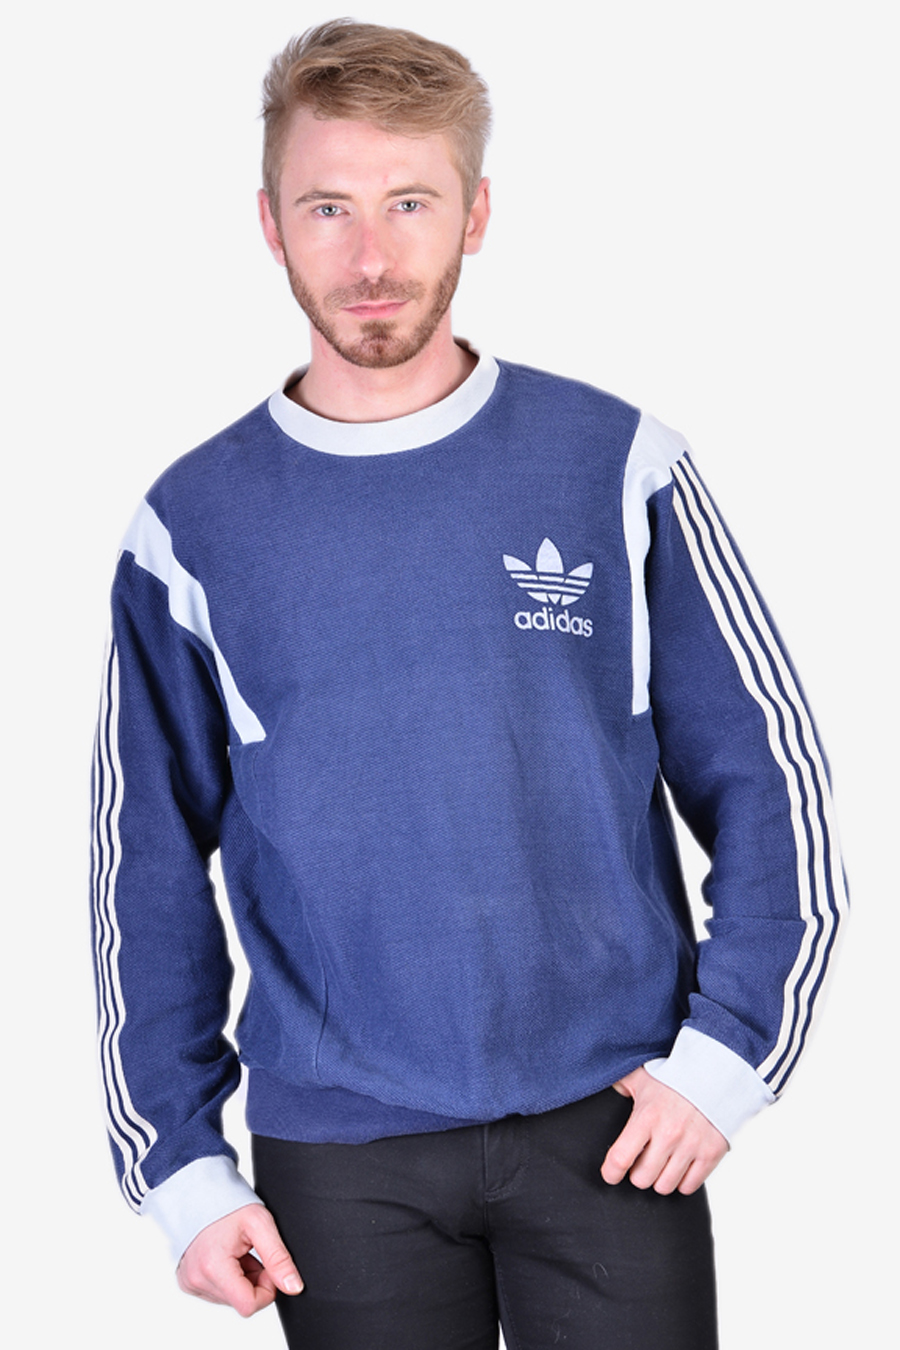 Adidas Ventex Sweatshirt | Size L - Brick Vintage